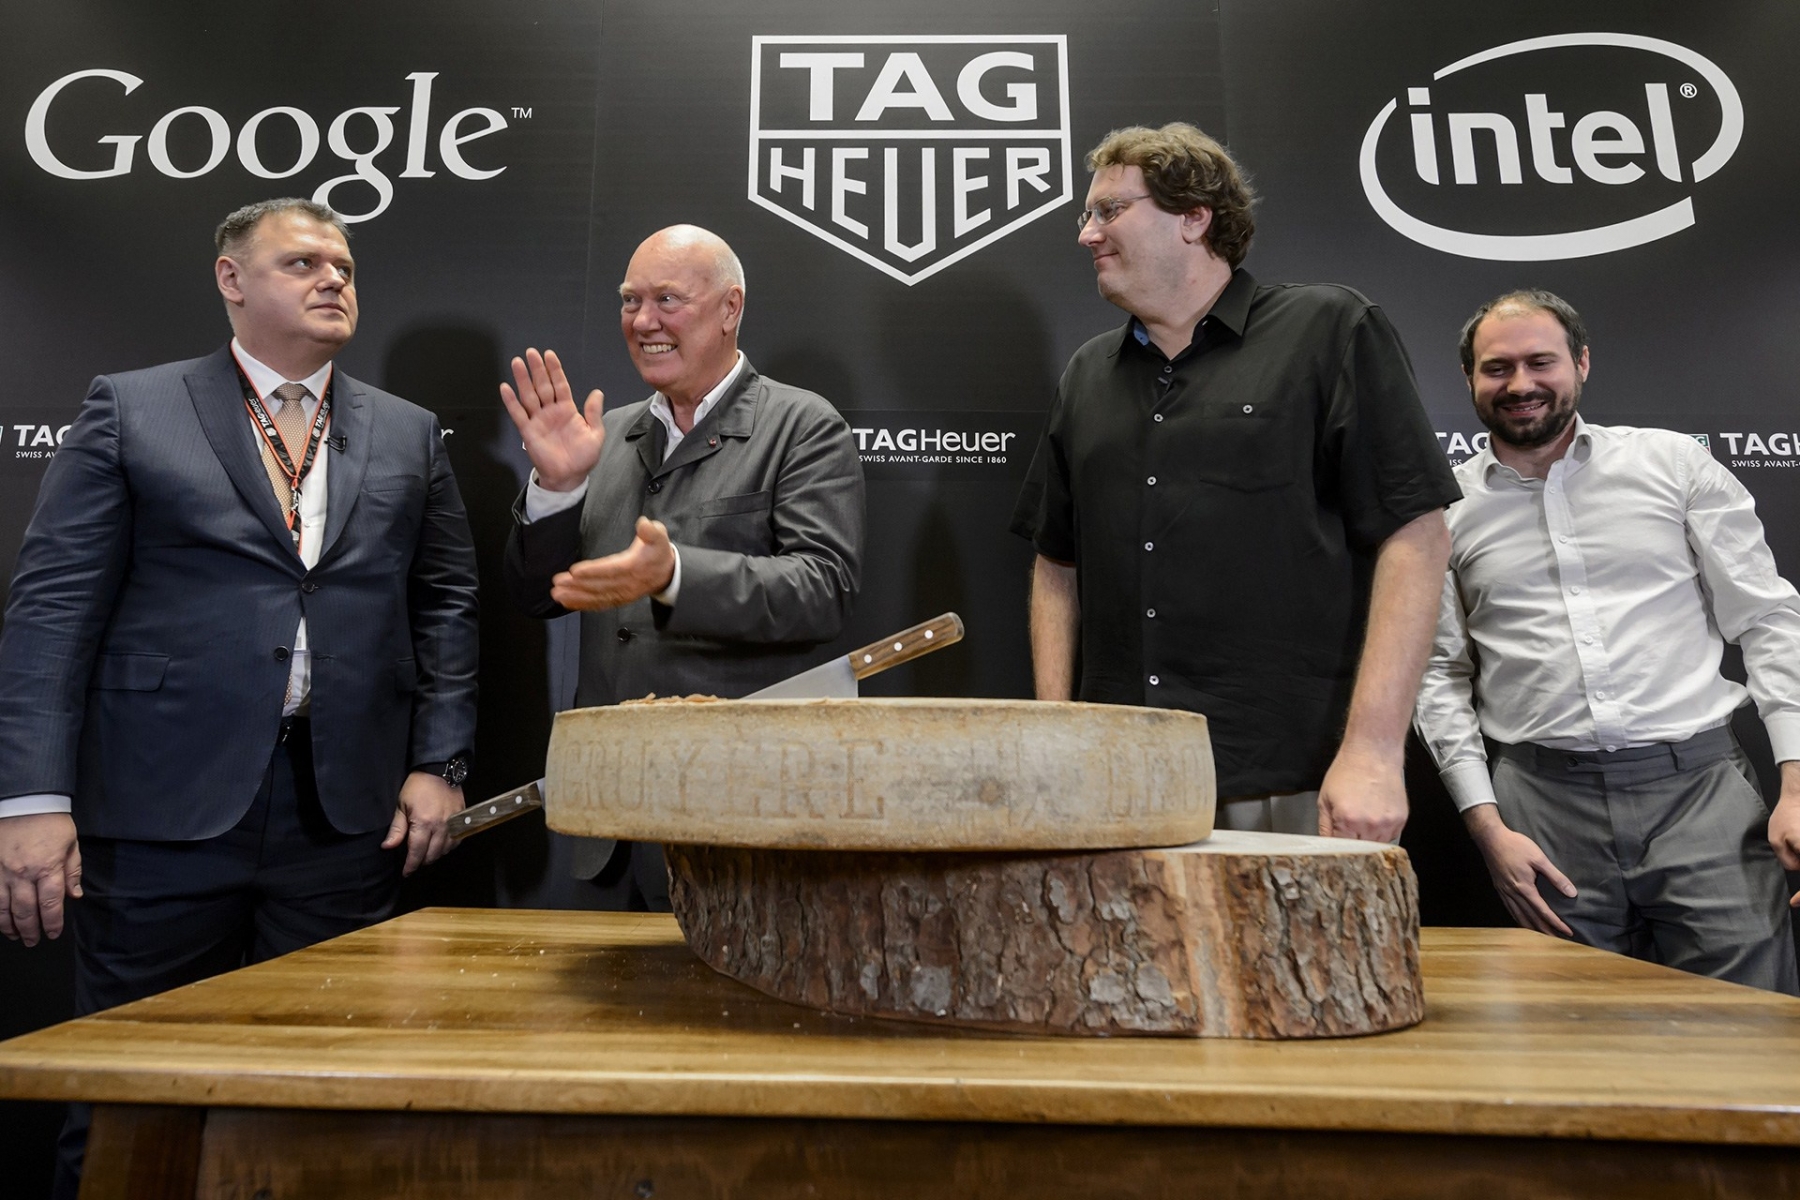 La montre issue du partenariat entre TAG Heuer, Intel et Google devrait être vendue dès le mois d'octobre.